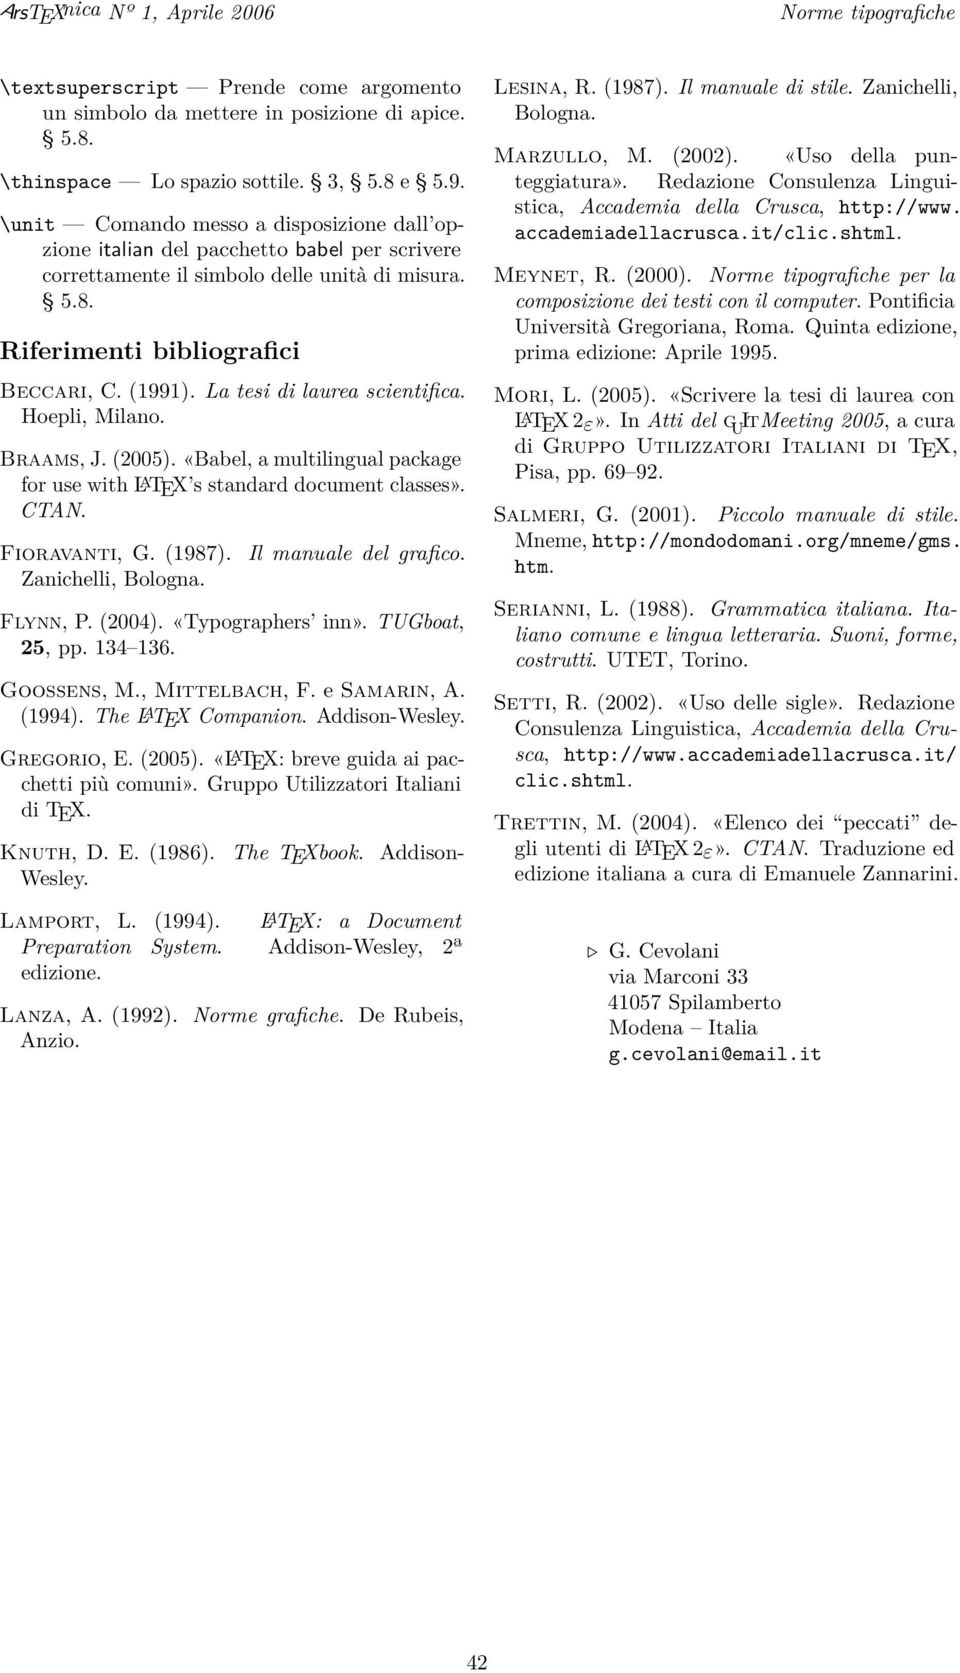 La tesi di laurea scientifica. Hoepli, Milano. Braams, J. (2005). «Babel, a multilingual package for use with L A TEX s standard document classes». CTAN. Fioravanti, G. (1987). Zanichelli, Bologna.